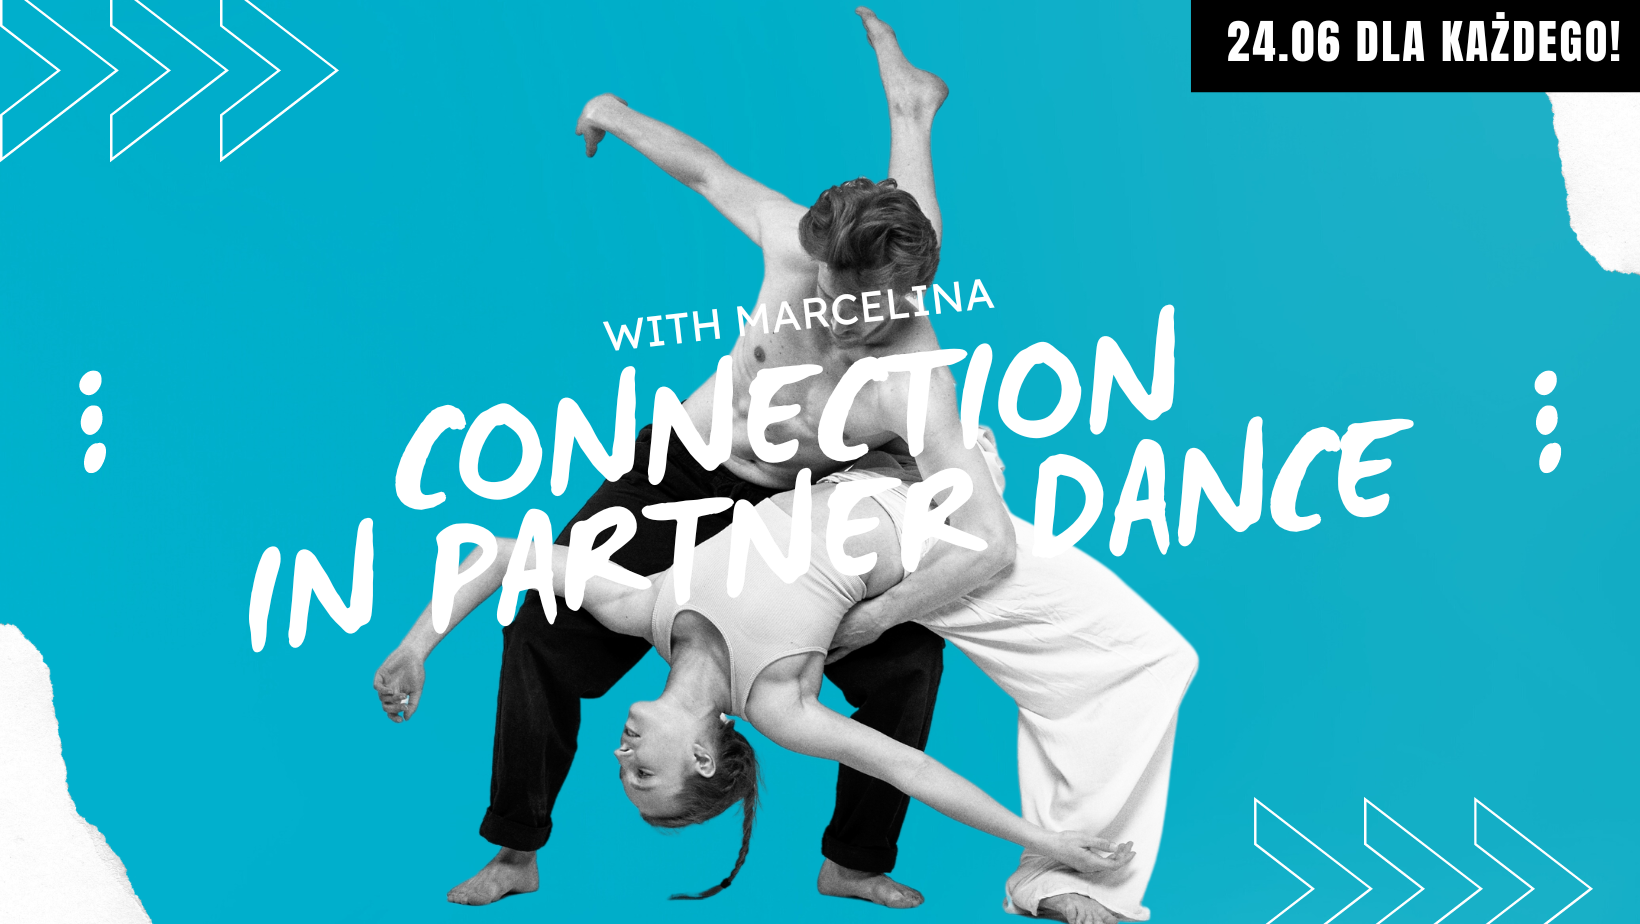 Connection in partner dance- kontynuacja zajęć z Marceliną - zajęcia weekendowe